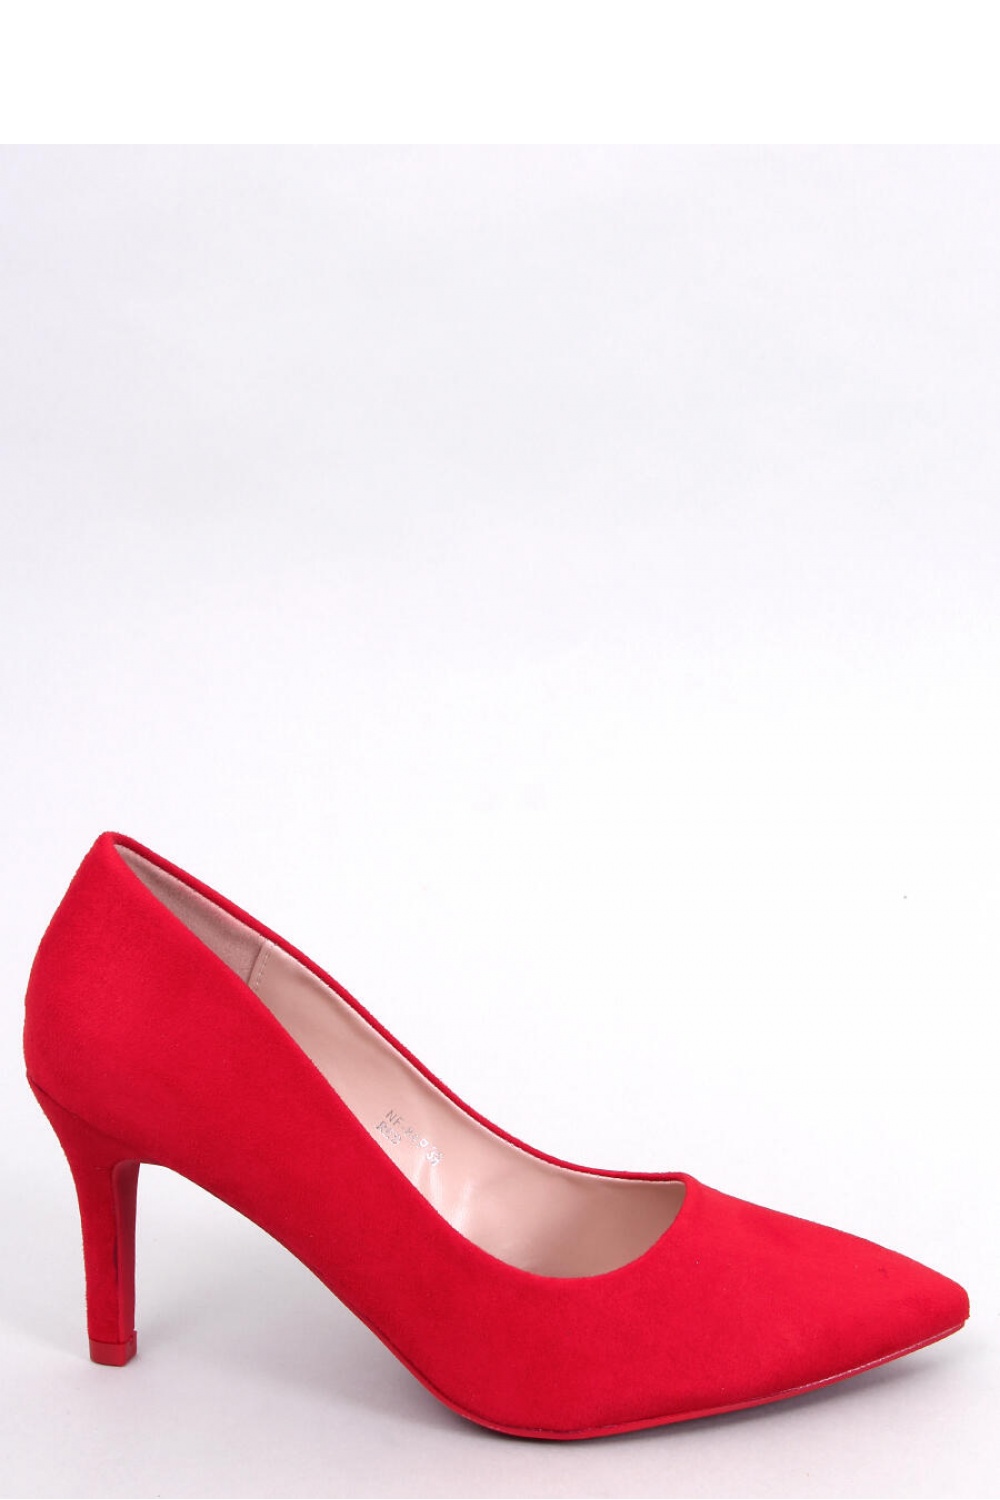 High heels model 178788 Inello